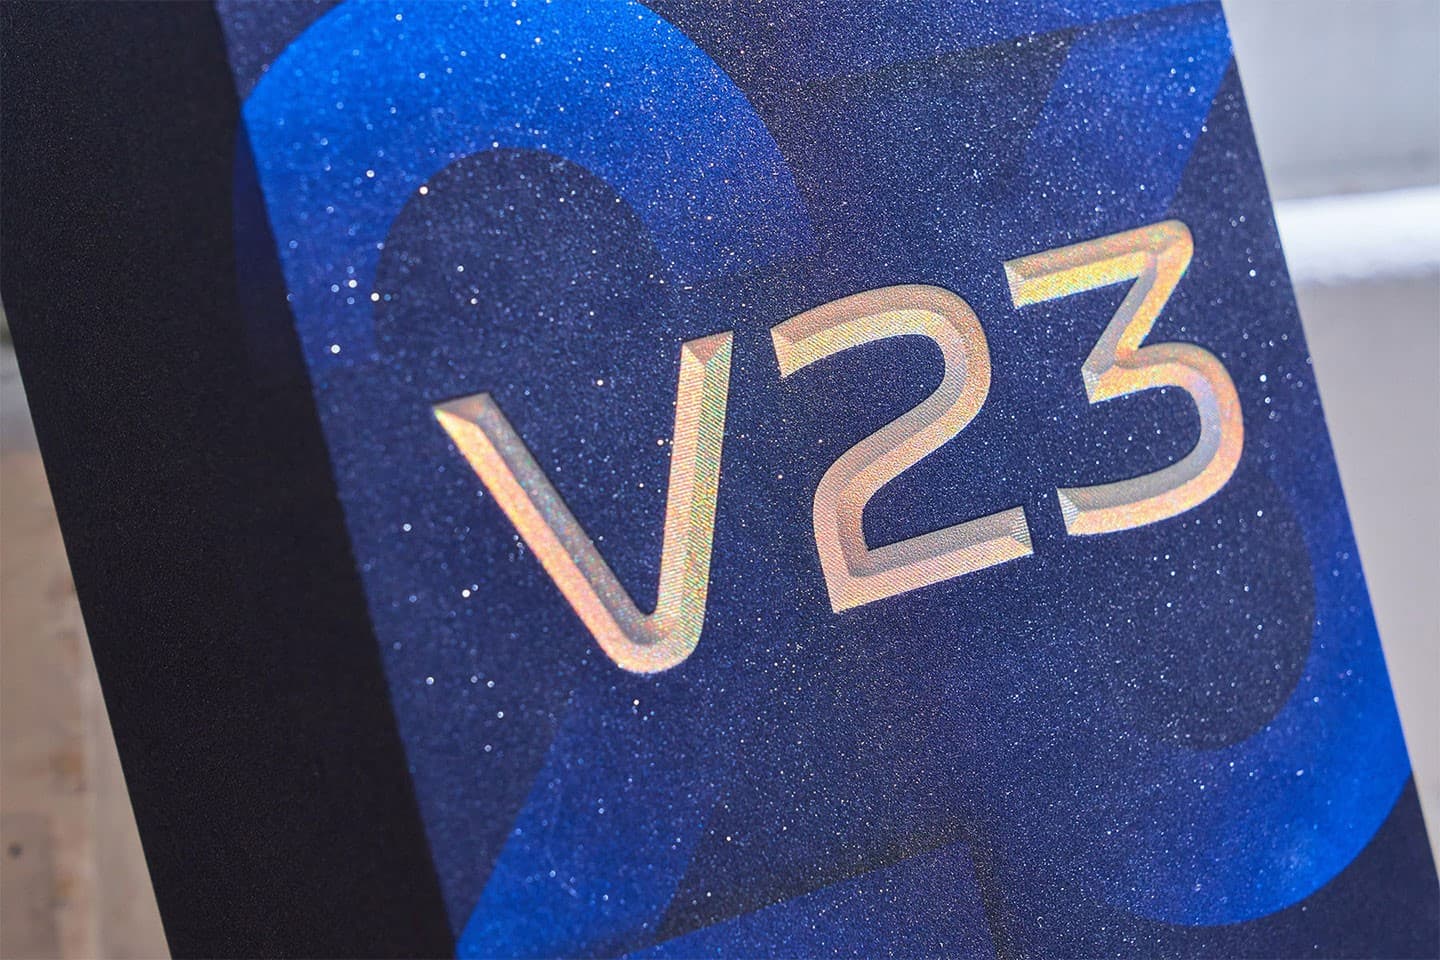 近距離觀看會發現，V23 5G 雷射字樣會因光線照射的方向不同而產生豐富的變色效果，盒身背景也以宇宙太空為主題來設計，表面還特別做了綿密的「星塵」紋理，完全呼應到手機本身的設計。